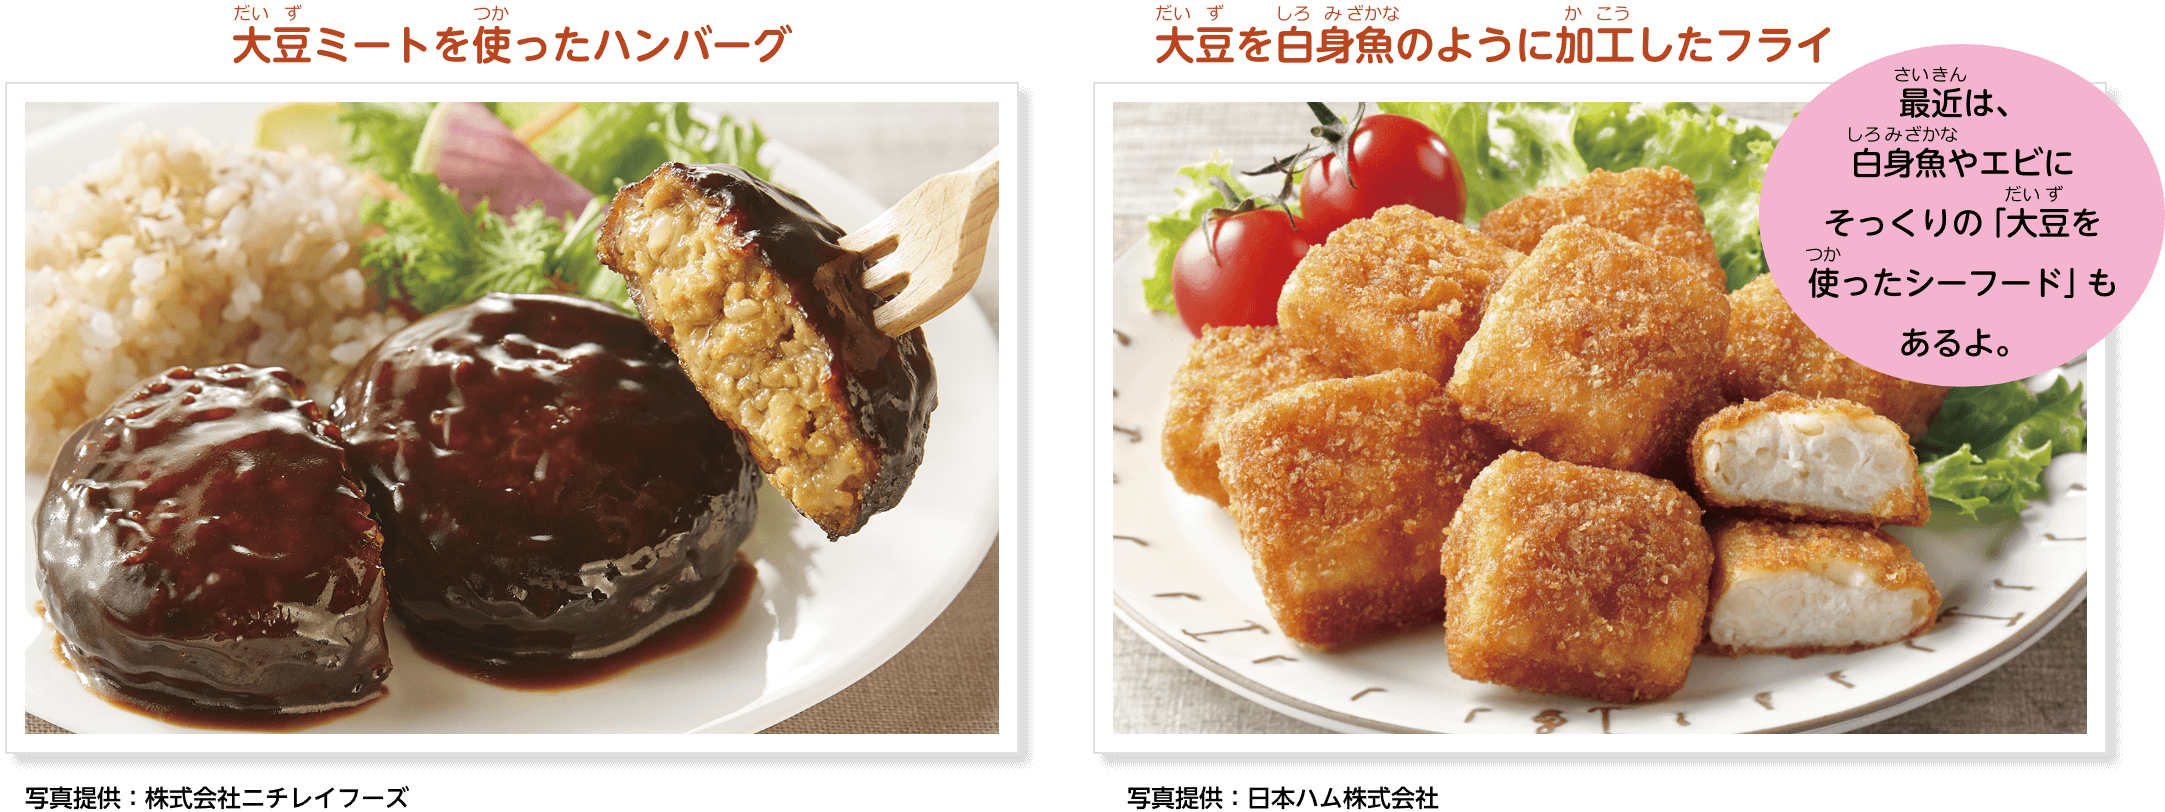 大豆ミートを使ったハンバーグの写真、大豆を白身魚のように加工したフライの写真